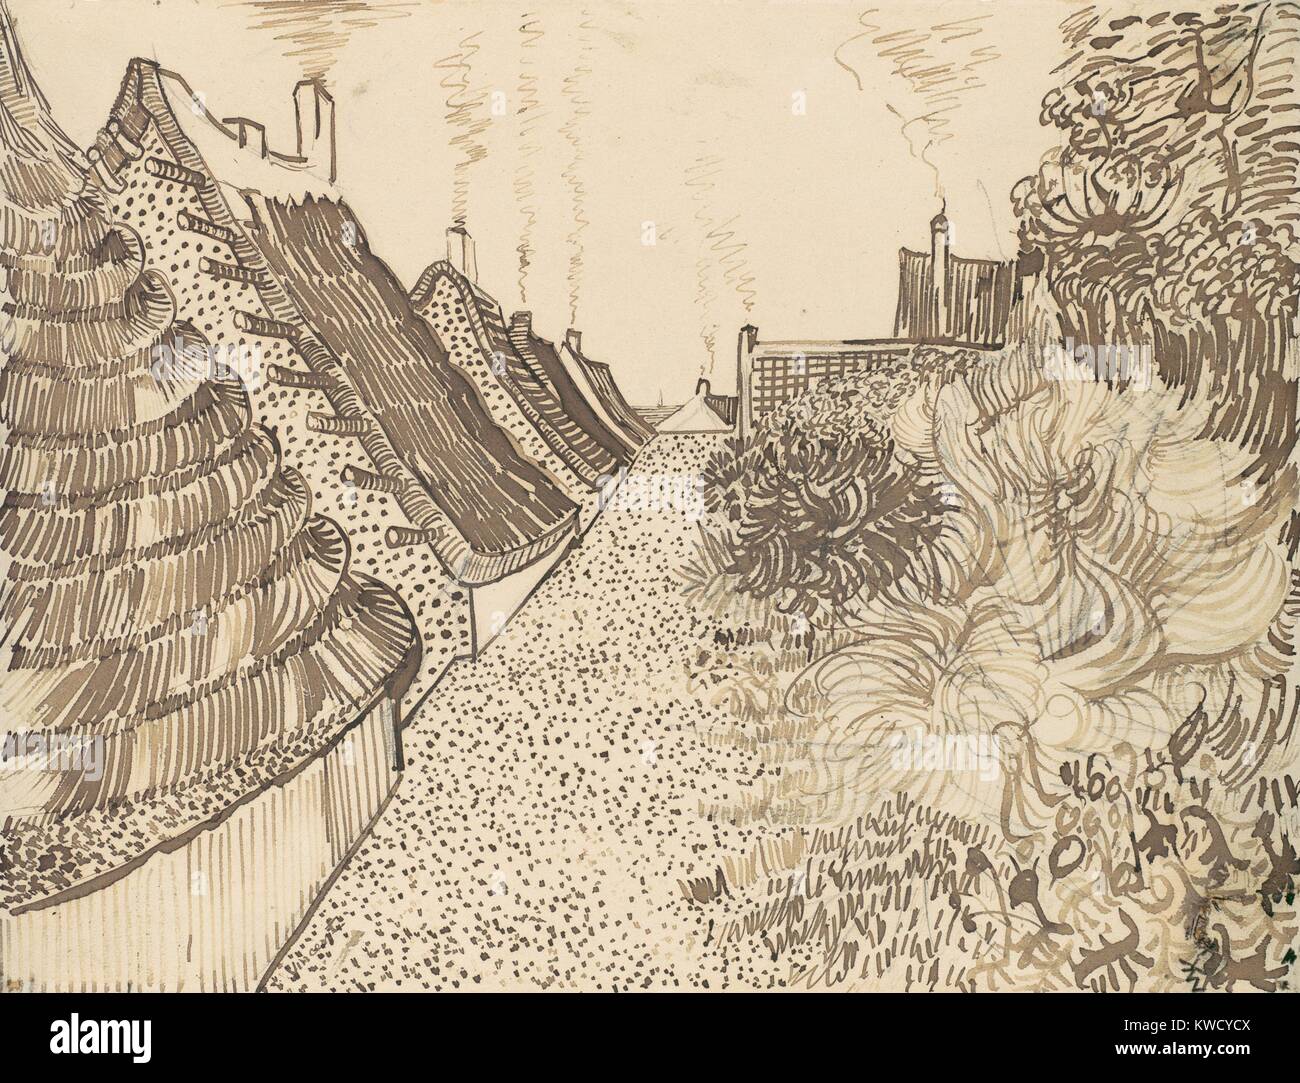 Dans la rue des Saintes-Maries-de-la-Mer, par Vincent Van Gogh, 1888, dessin postimpressionniste néerlandais. Le reed plume et encre sur mine de plomb sur papier a été faite d'une scène de village de pêche méditerranéenne avec des toits de chaume et fumeurs cheminées (BSLOC 2017 5 59) Banque D'Images